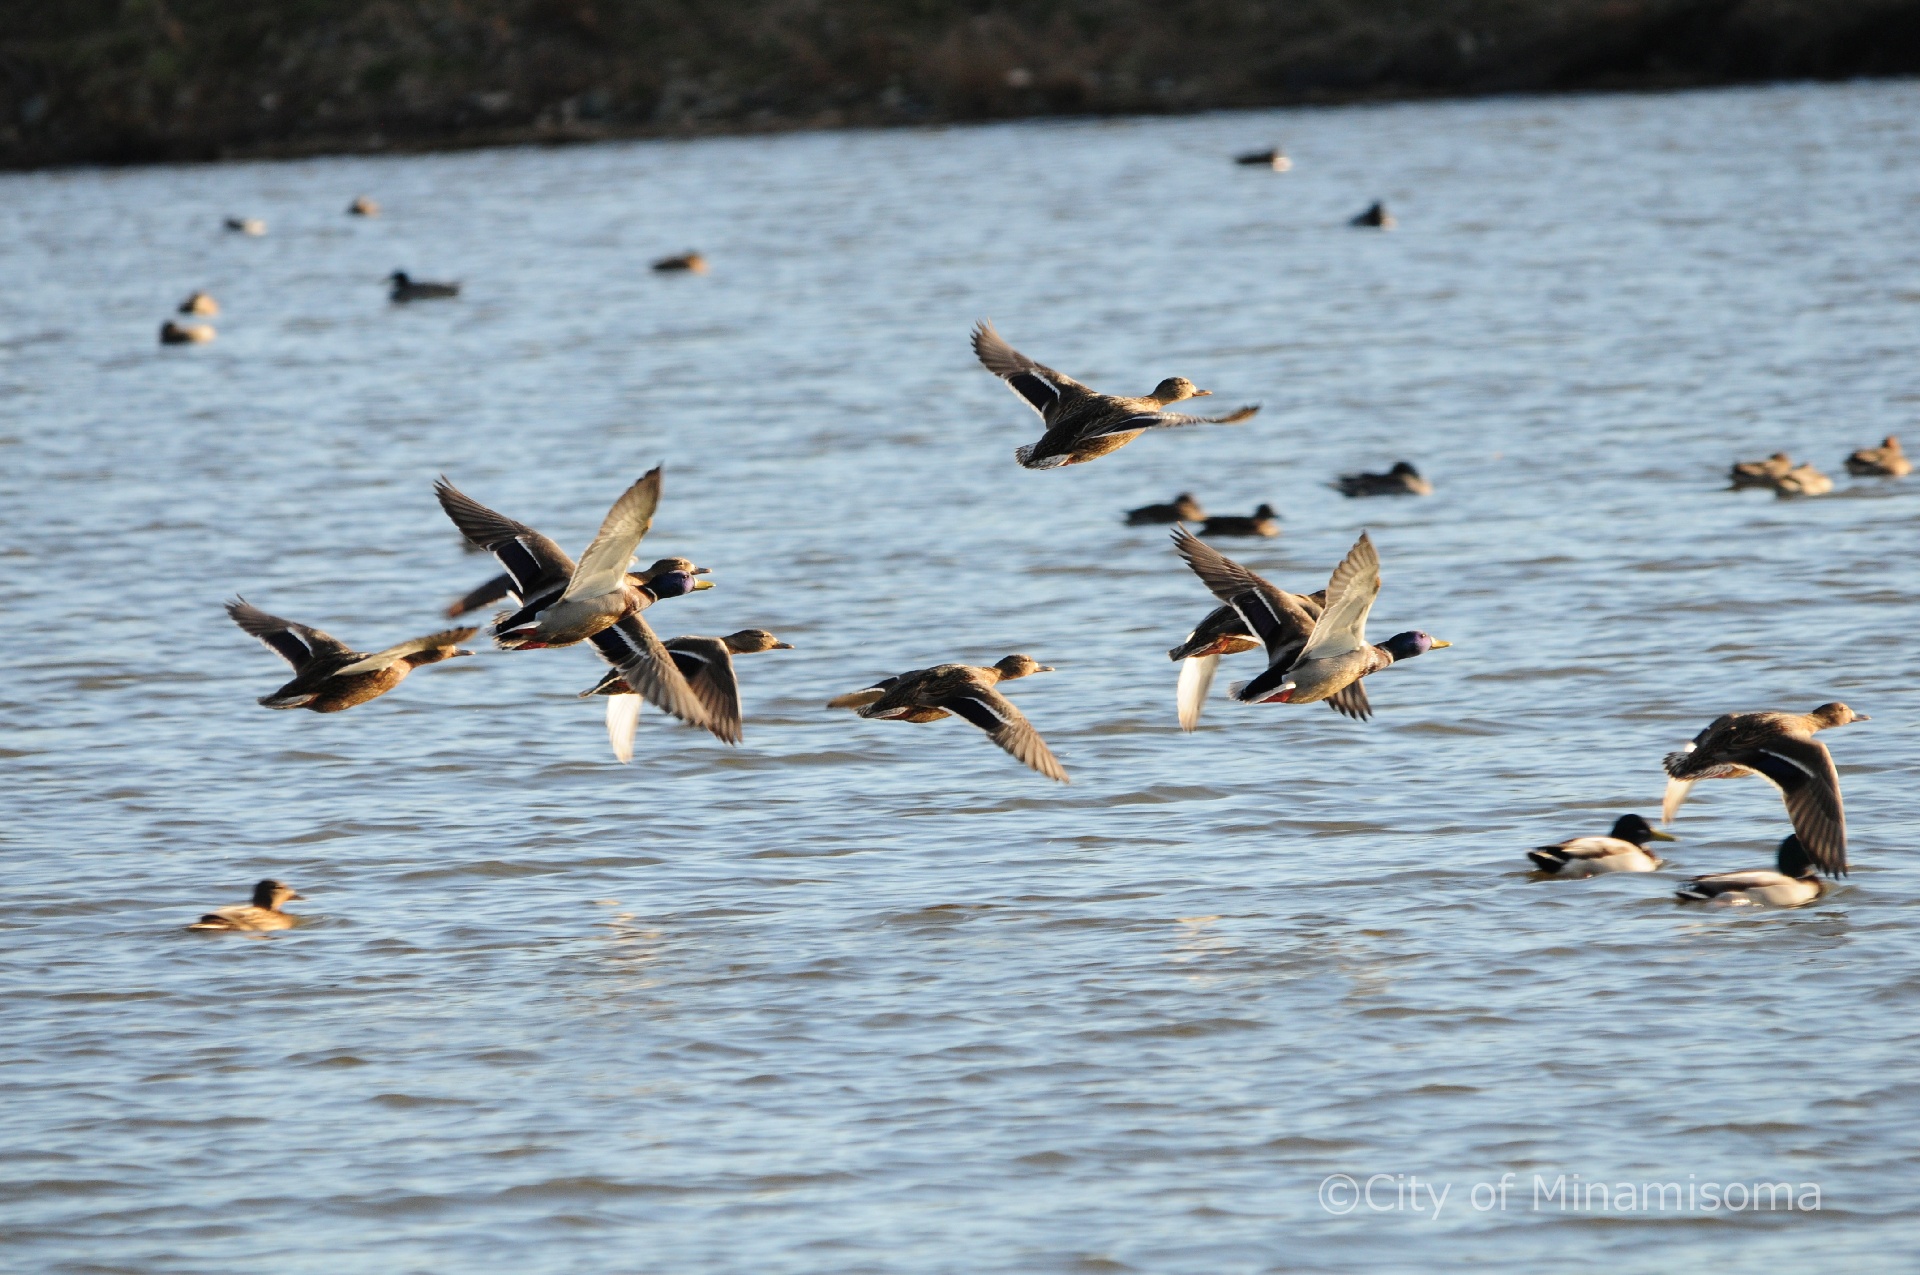 小高区村上周辺の水鳥の様子。今まさに水面から飛び立つ水鳥たち。